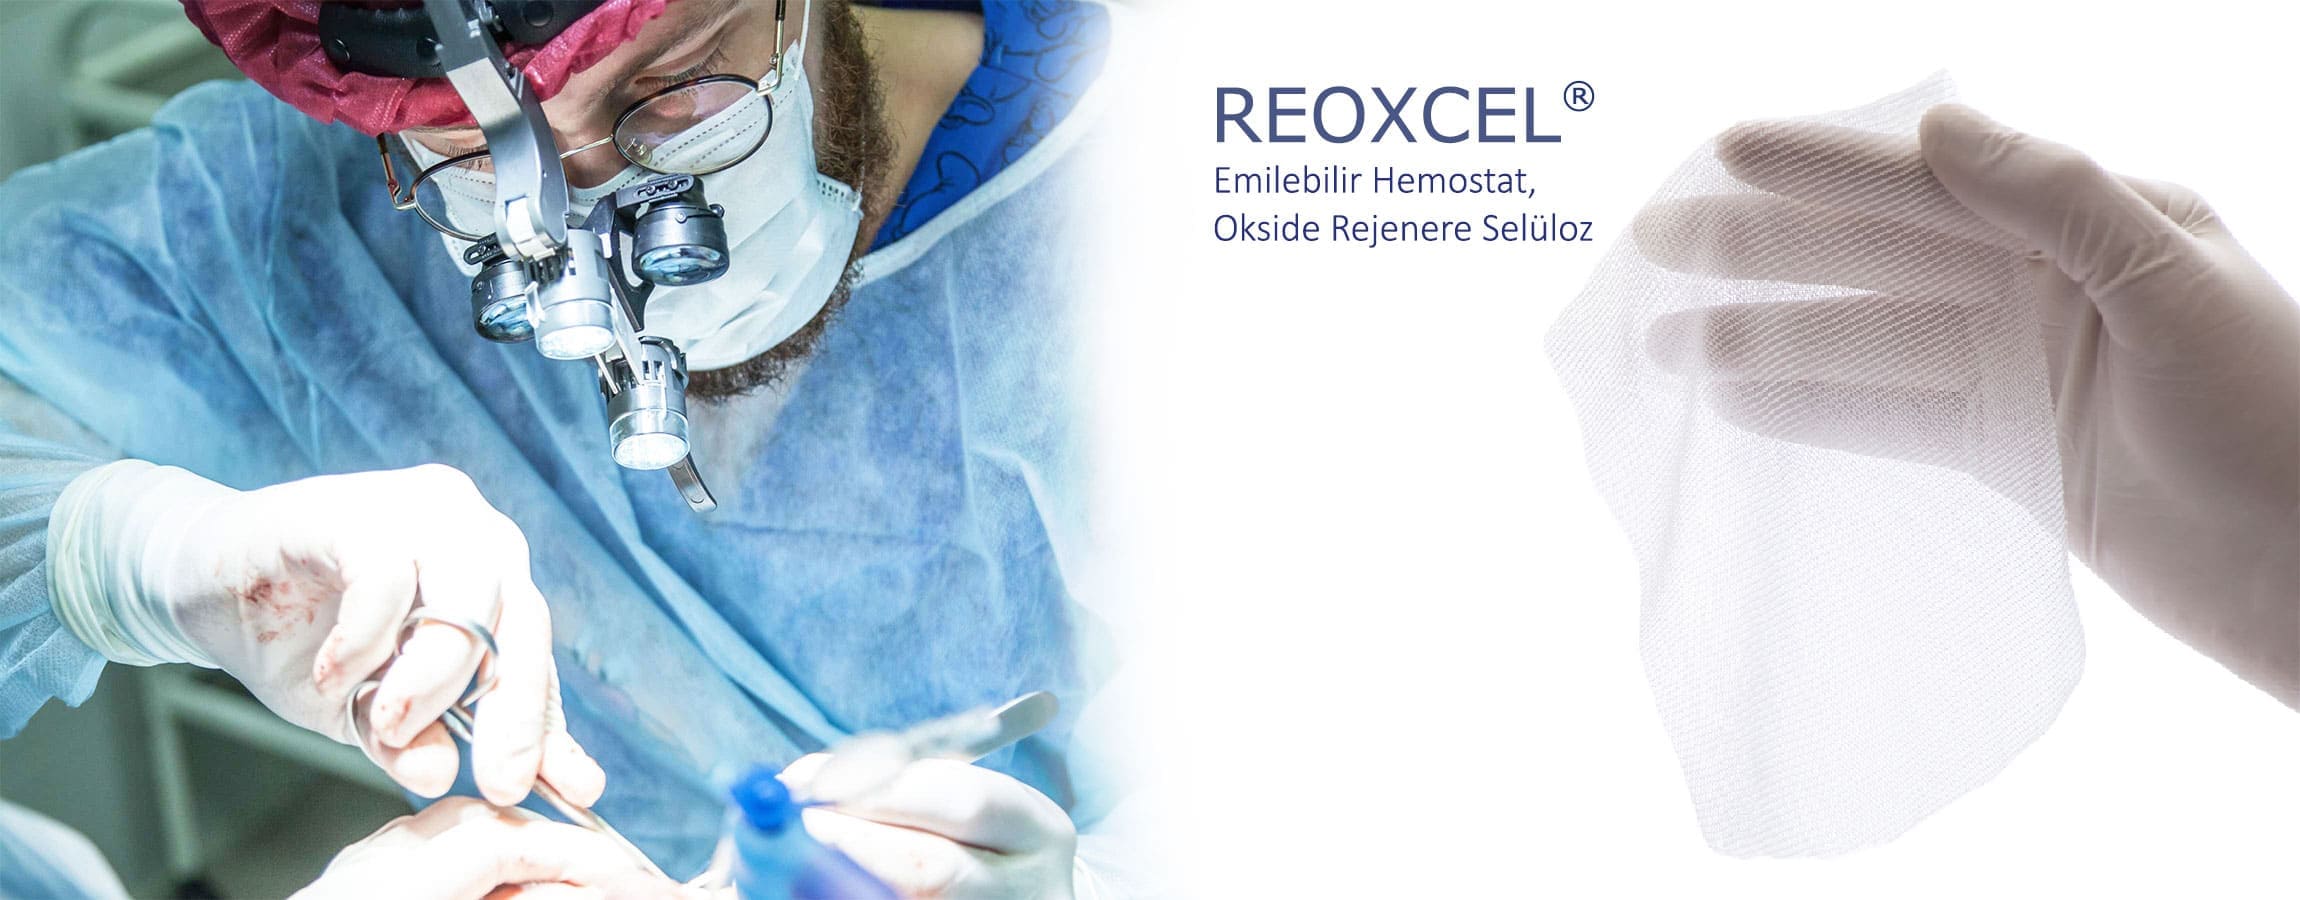 Genel Cerrahide Reoxcel Hemostat Kullanımı